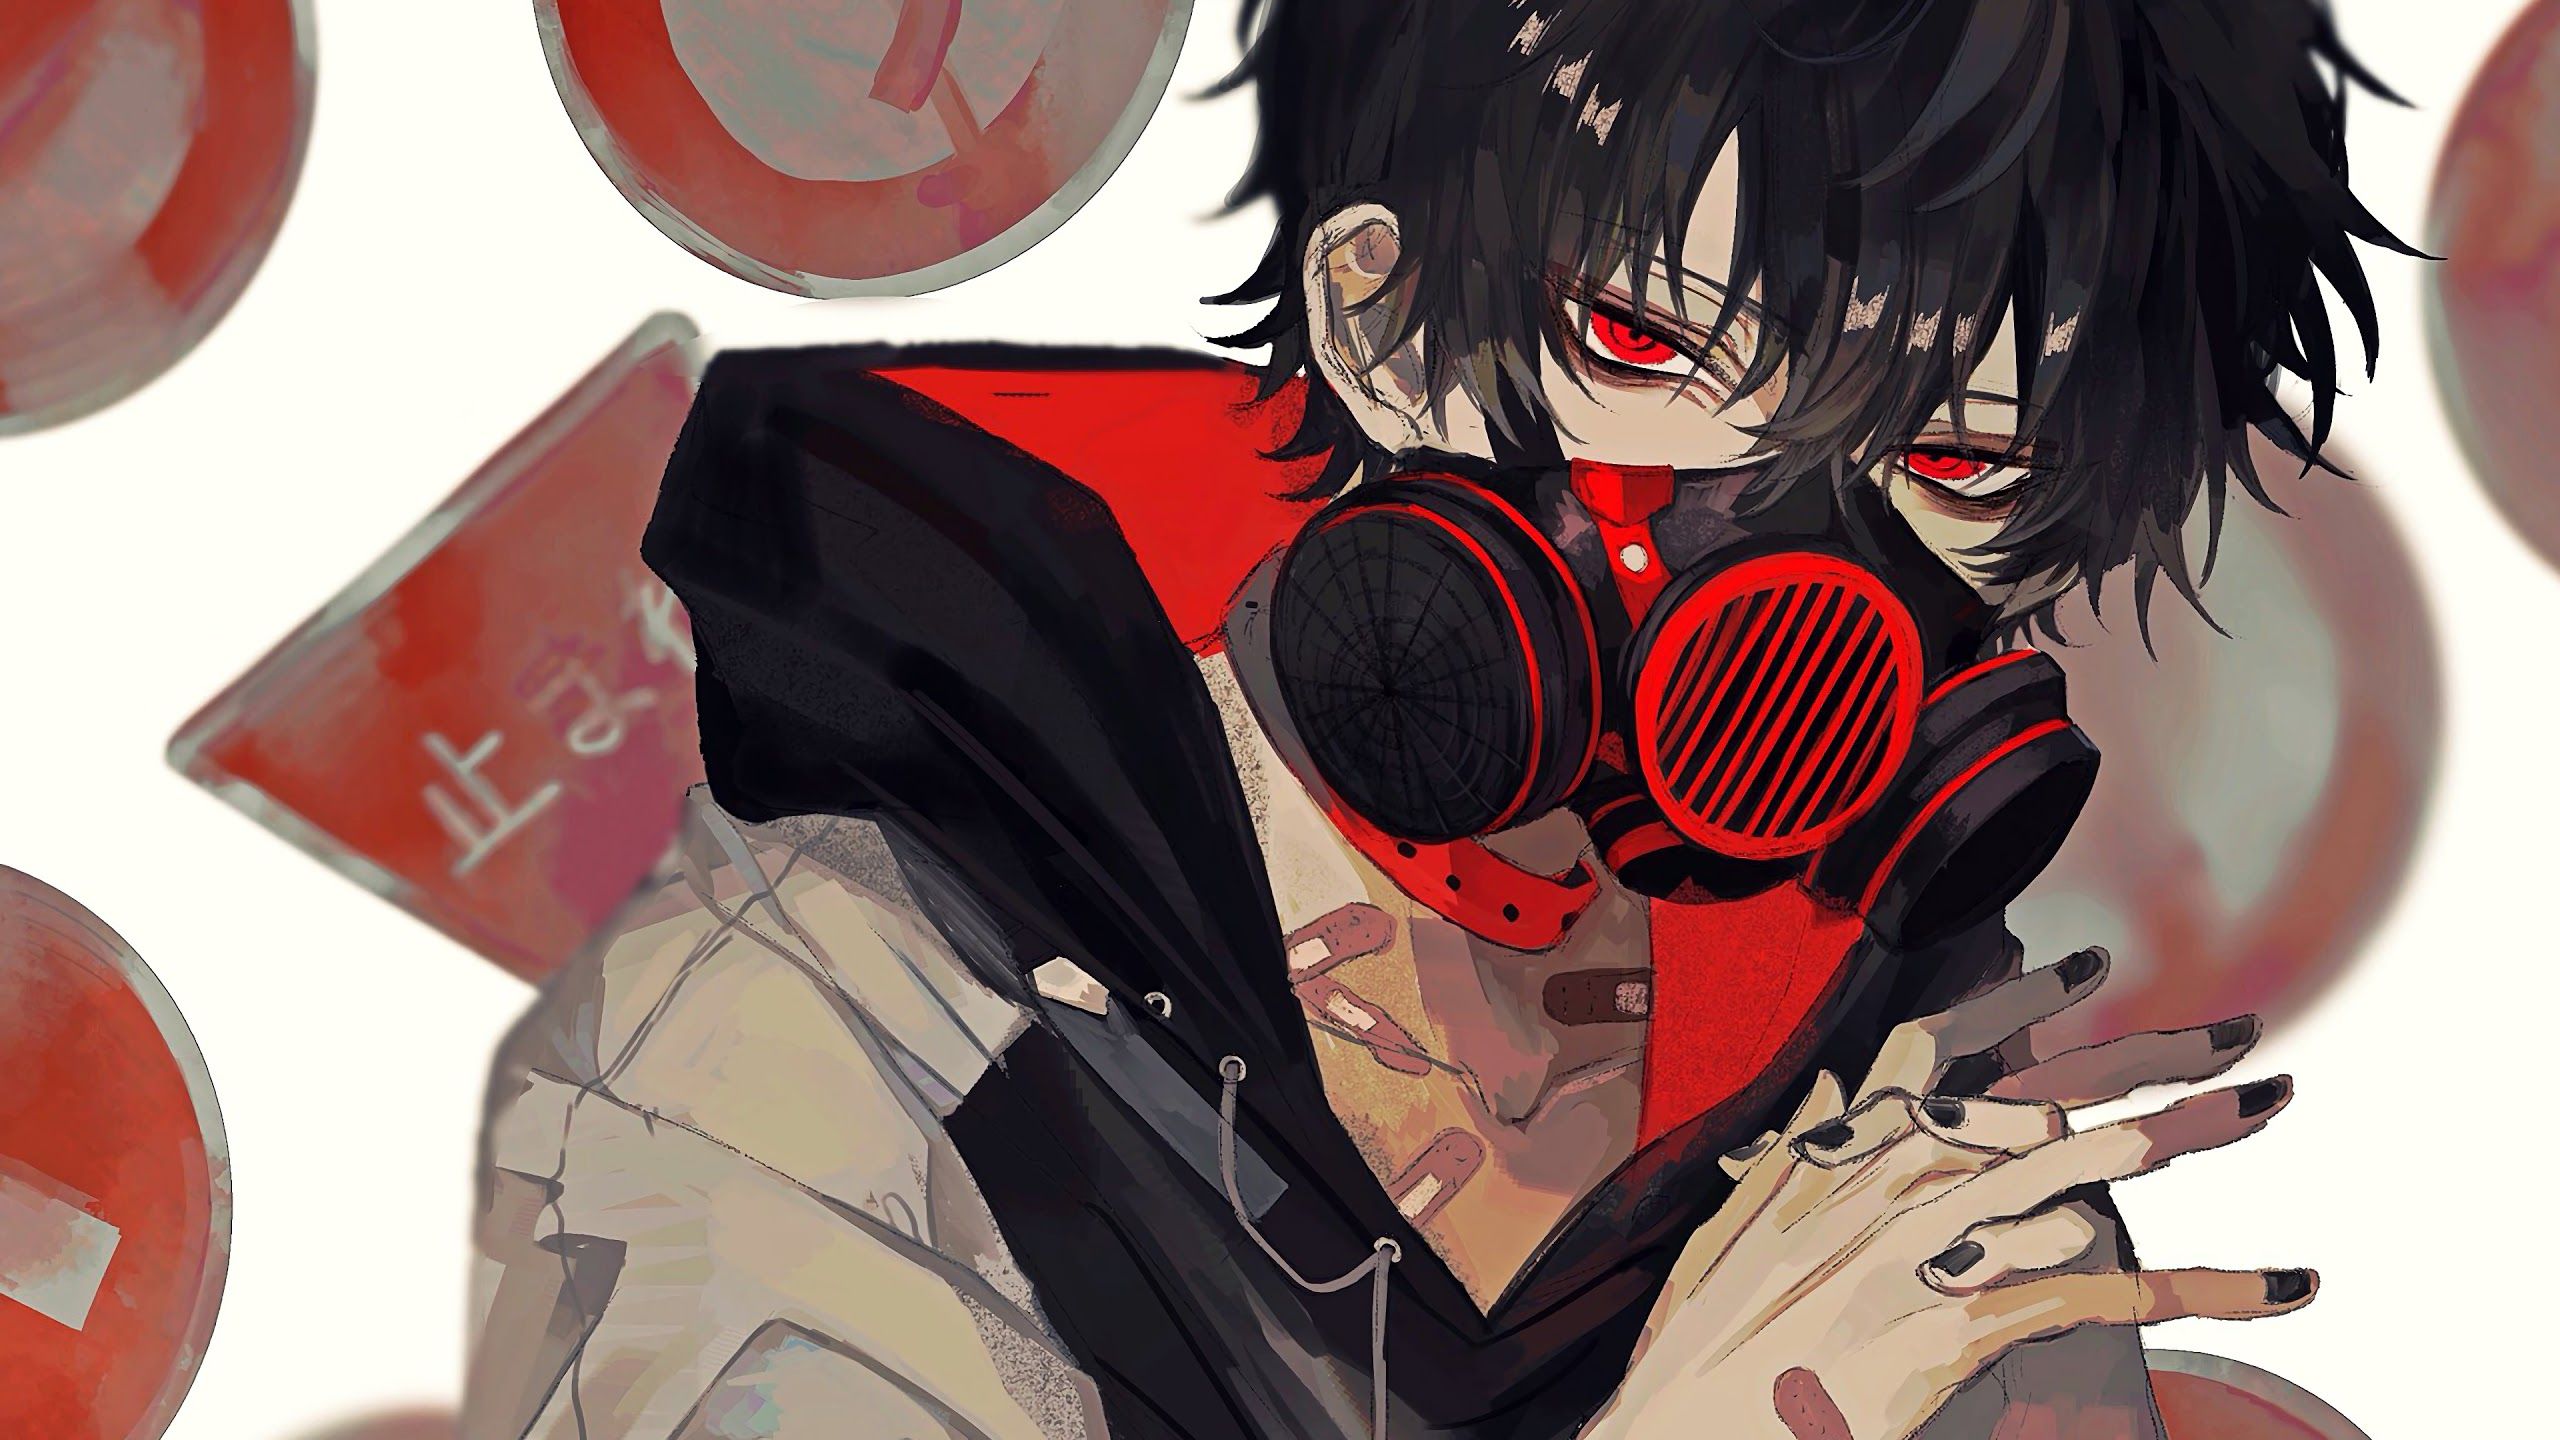 Mask Gas Mask Anime Boy Wallpaper